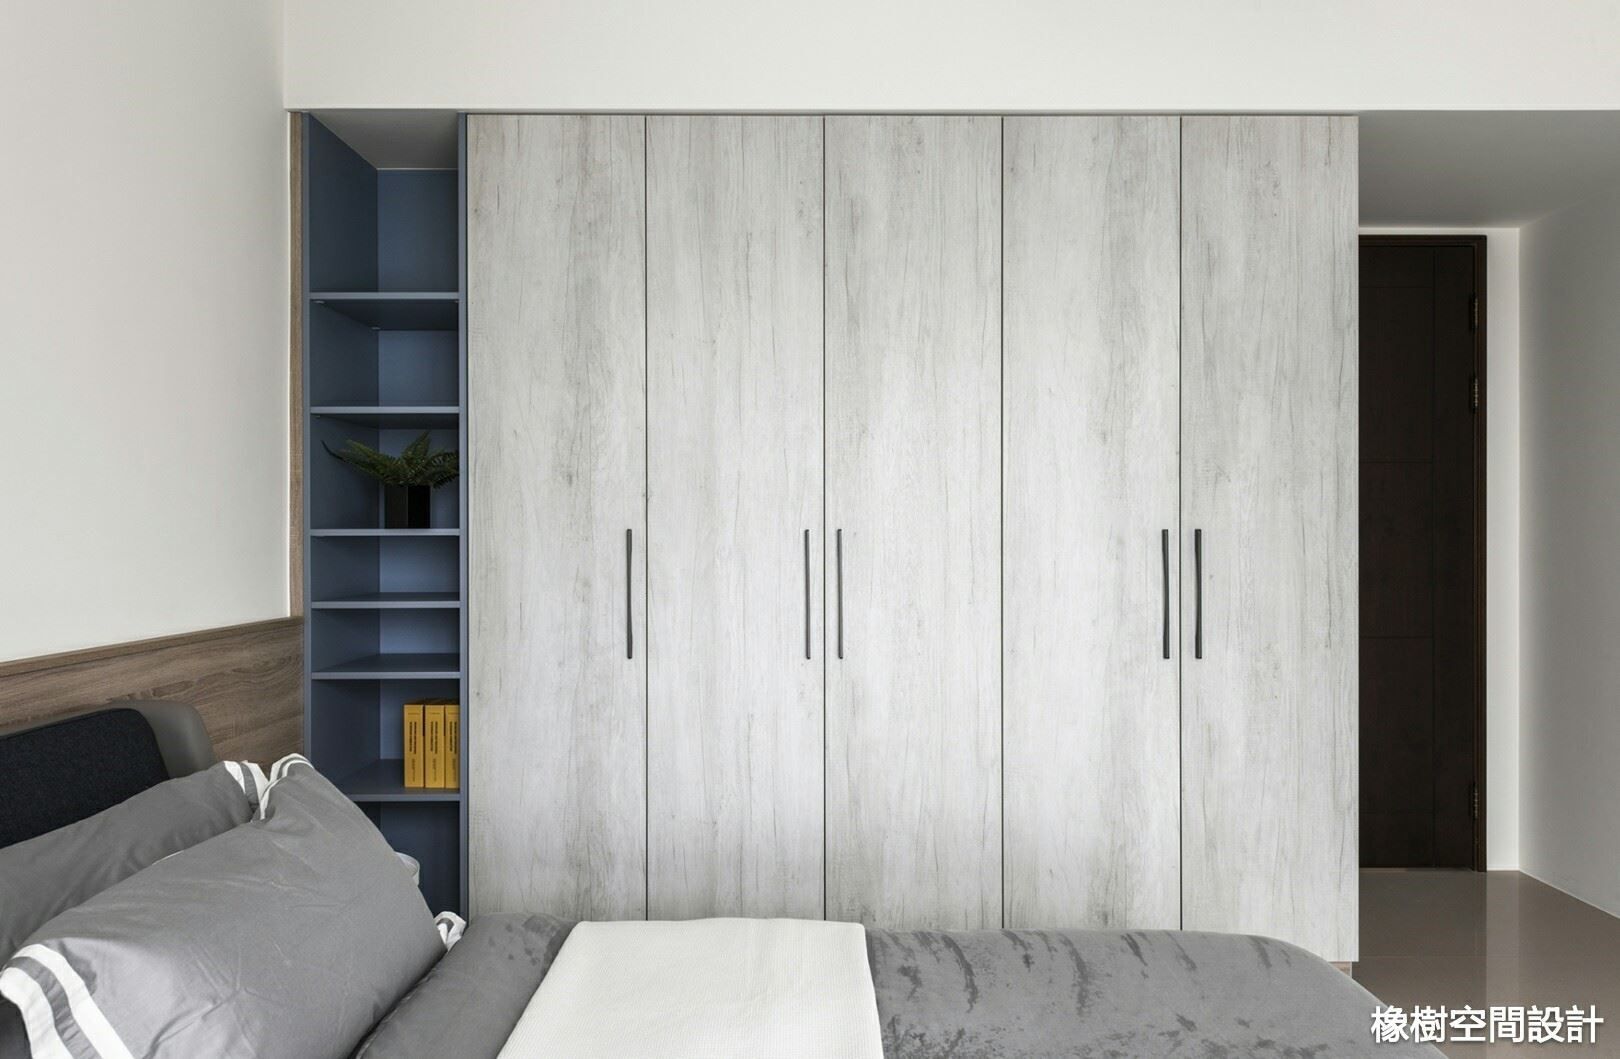 高雄 李宅, 橡樹設計Oak Design 橡樹設計Oak Design Minimalist bedroom